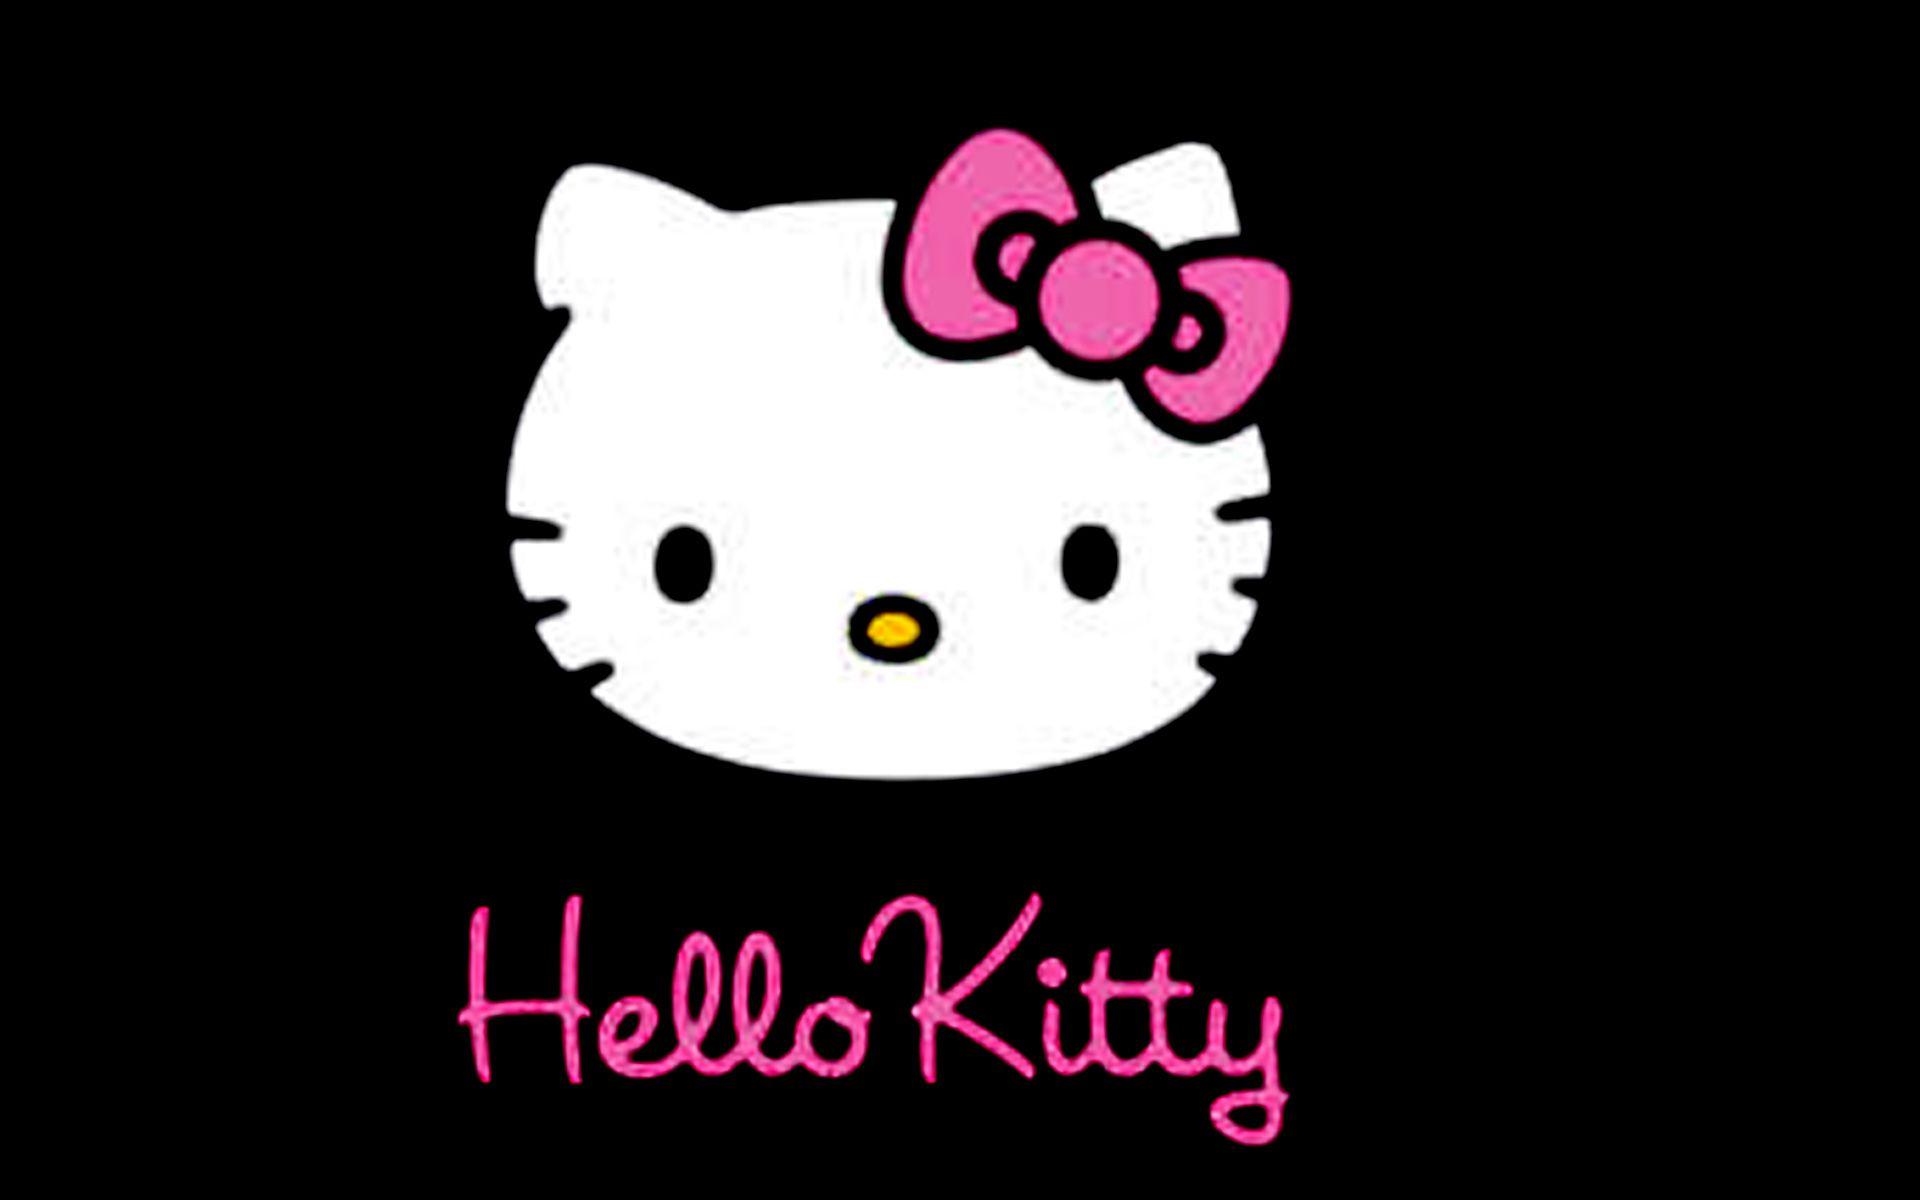 Nếu bạn là fan của Hello Kitty, không thể bỏ qua bức ảnh này với nền đen bóng mịn, tô điểm bởi hình ảnh đáng yêu của chú mèo được yêu thích trên toàn thế giới.